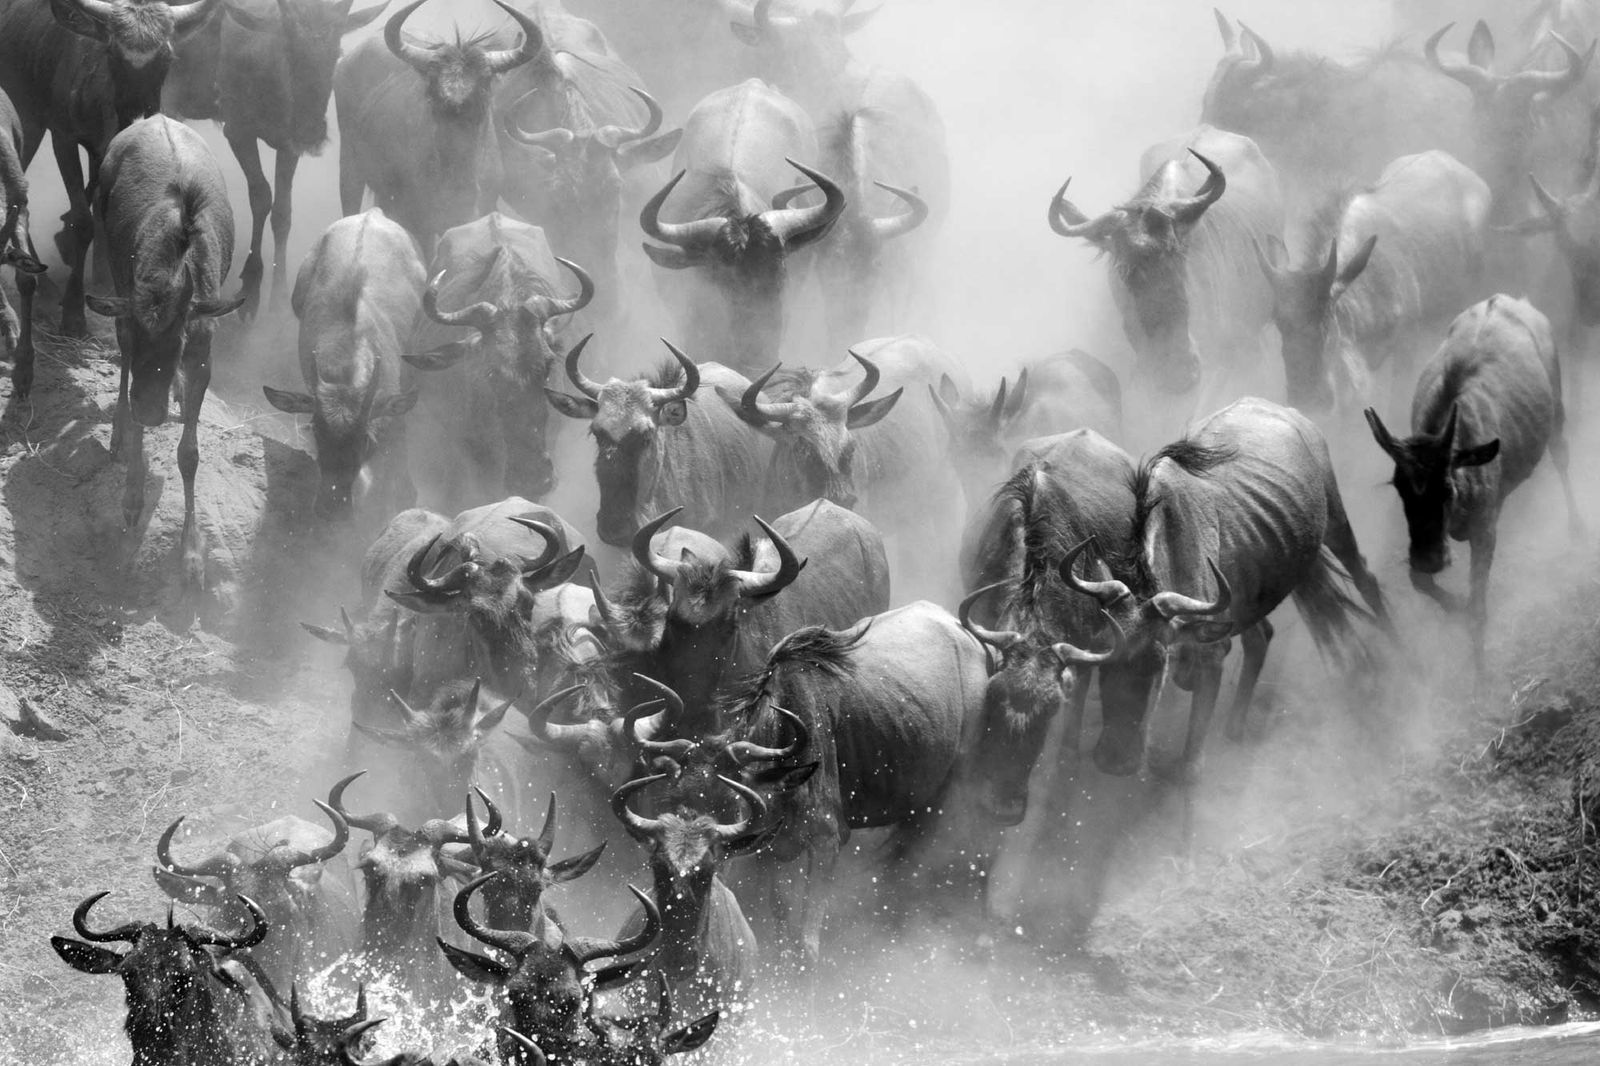 Masai Mara Safari